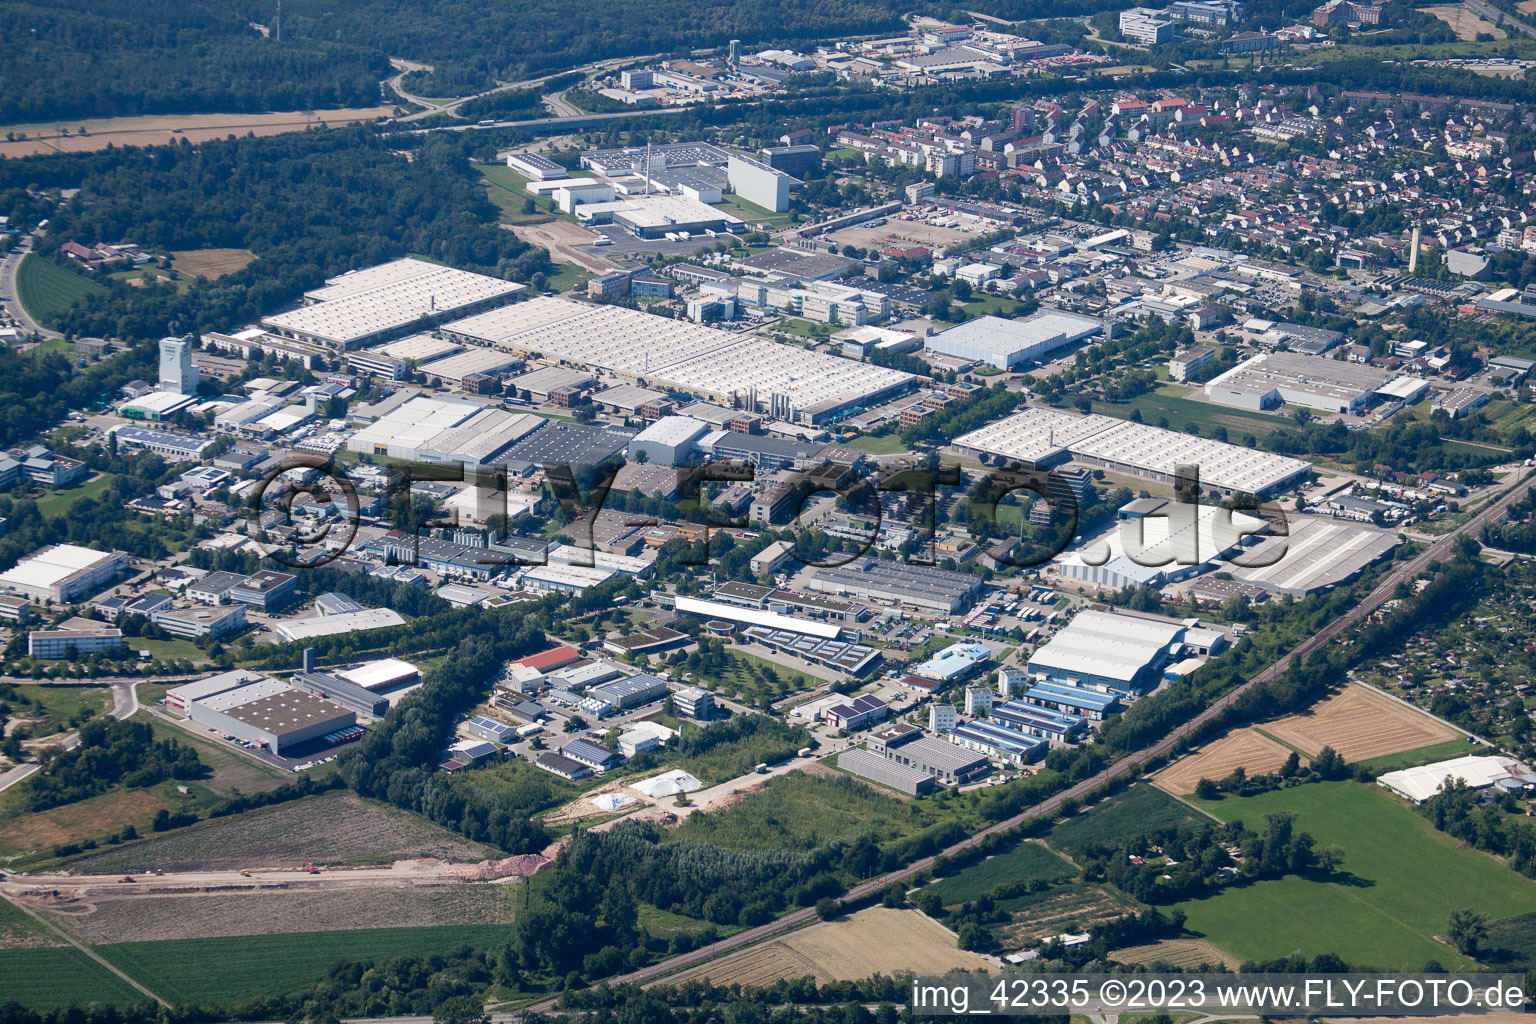 Entrepôt de pièces Daimler, entrepôt de verre Mercedes à Ettlingen dans le département Bade-Wurtemberg, Allemagne depuis l'avion